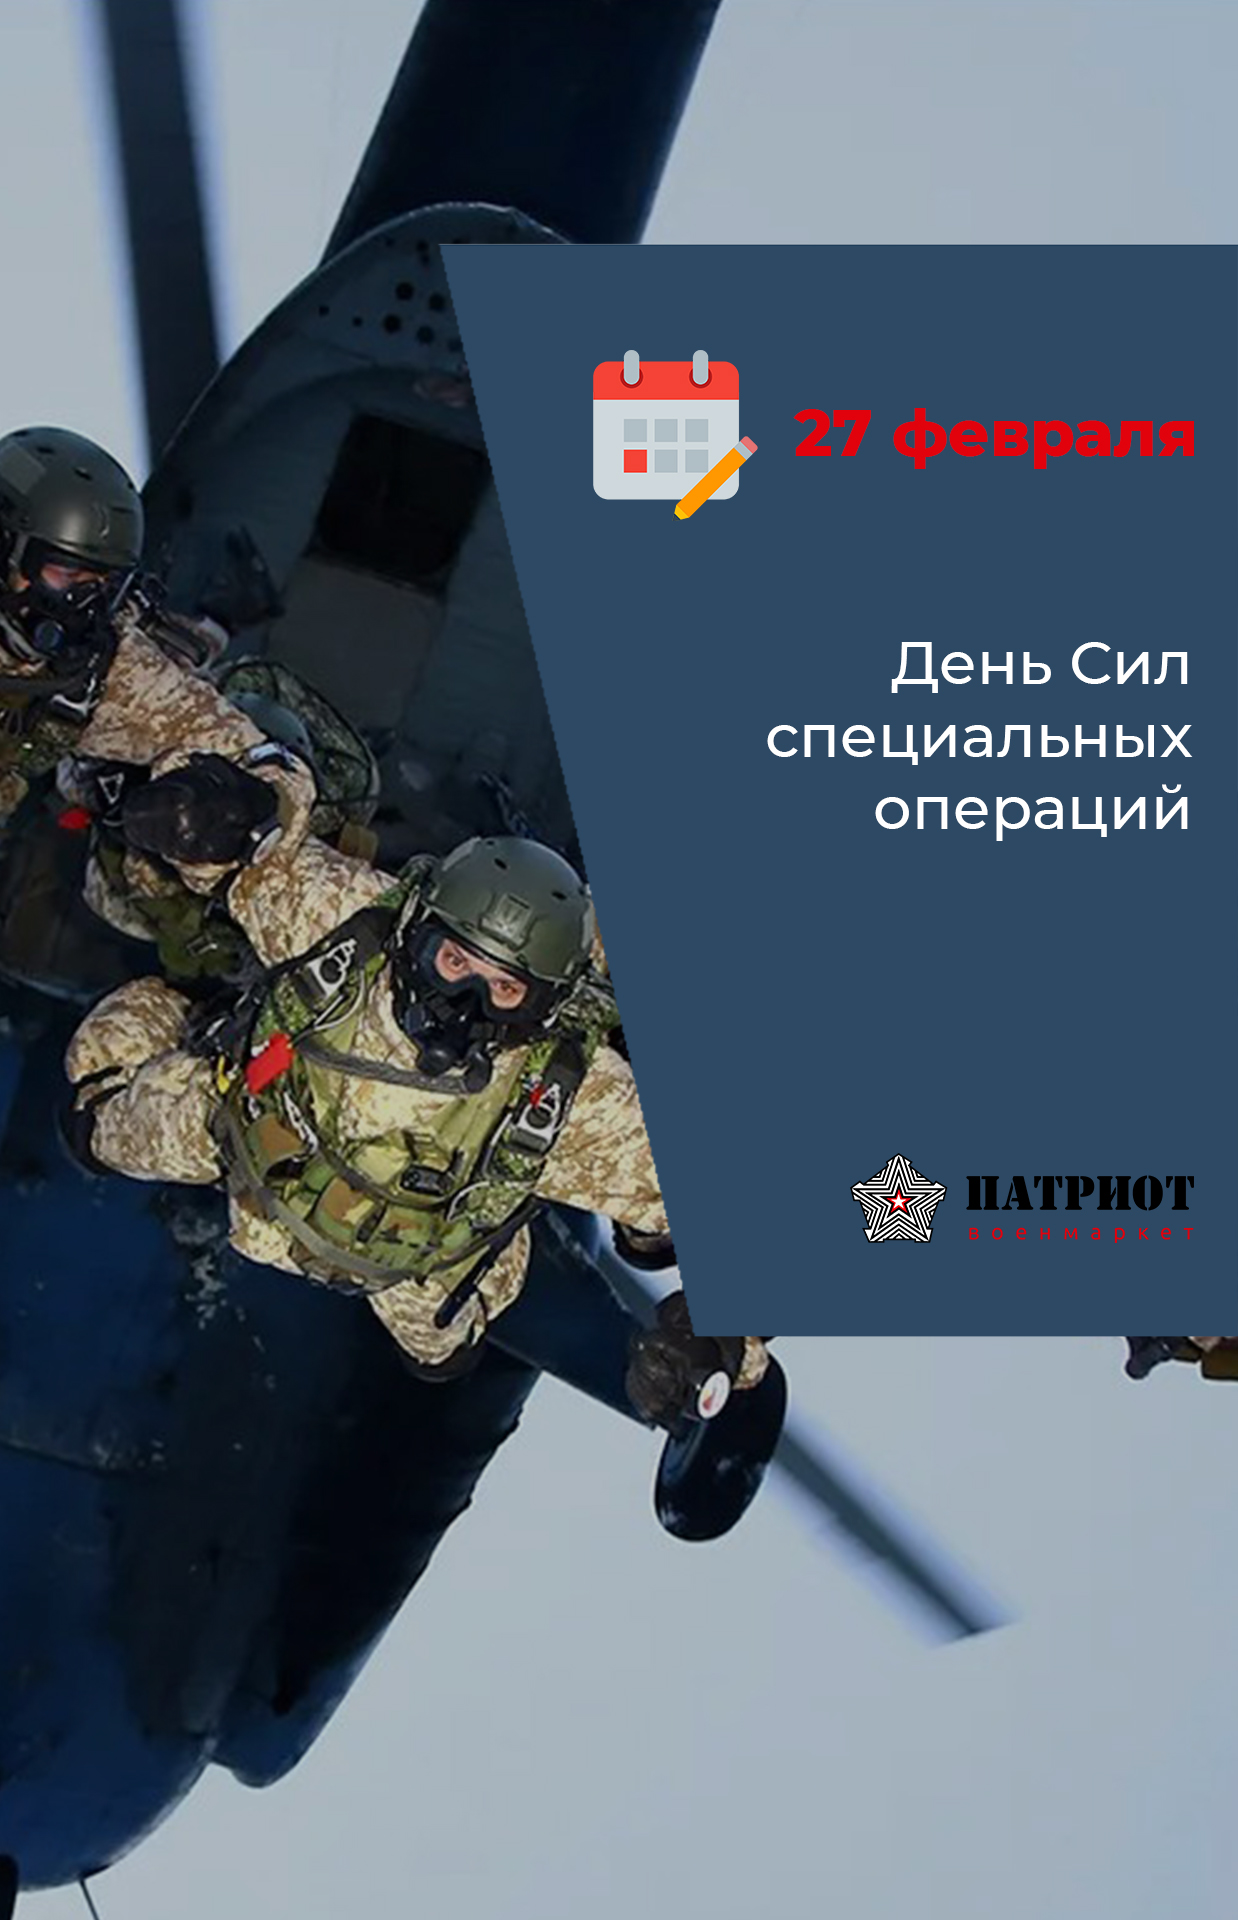 27 февраля - День Сил специальных операций в России